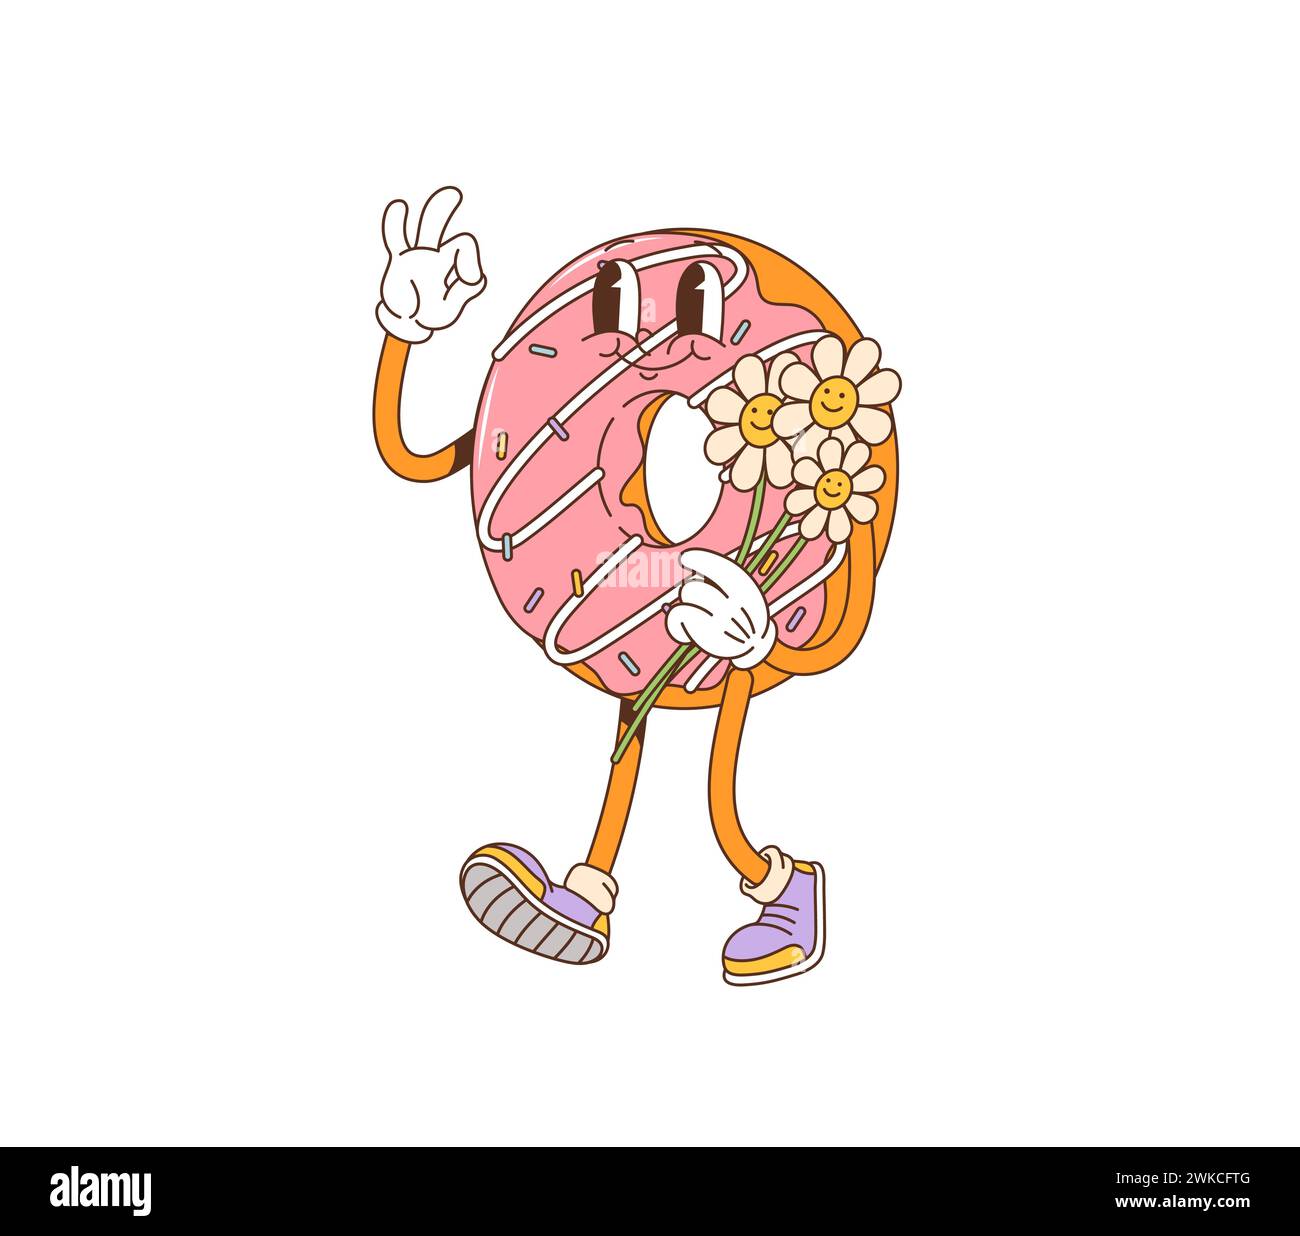 Cartoon Donut Retro groovige Figur hält fröhlich einen Blumenstrauß. Isoliertes Vektor-Donut-Gebäck mit rosafarbener Glasur, bunten Streuseln und Vintage-Flair, das eine nostalgische Atmosphäre der 70er Jahre verkörpert Stock Vektor